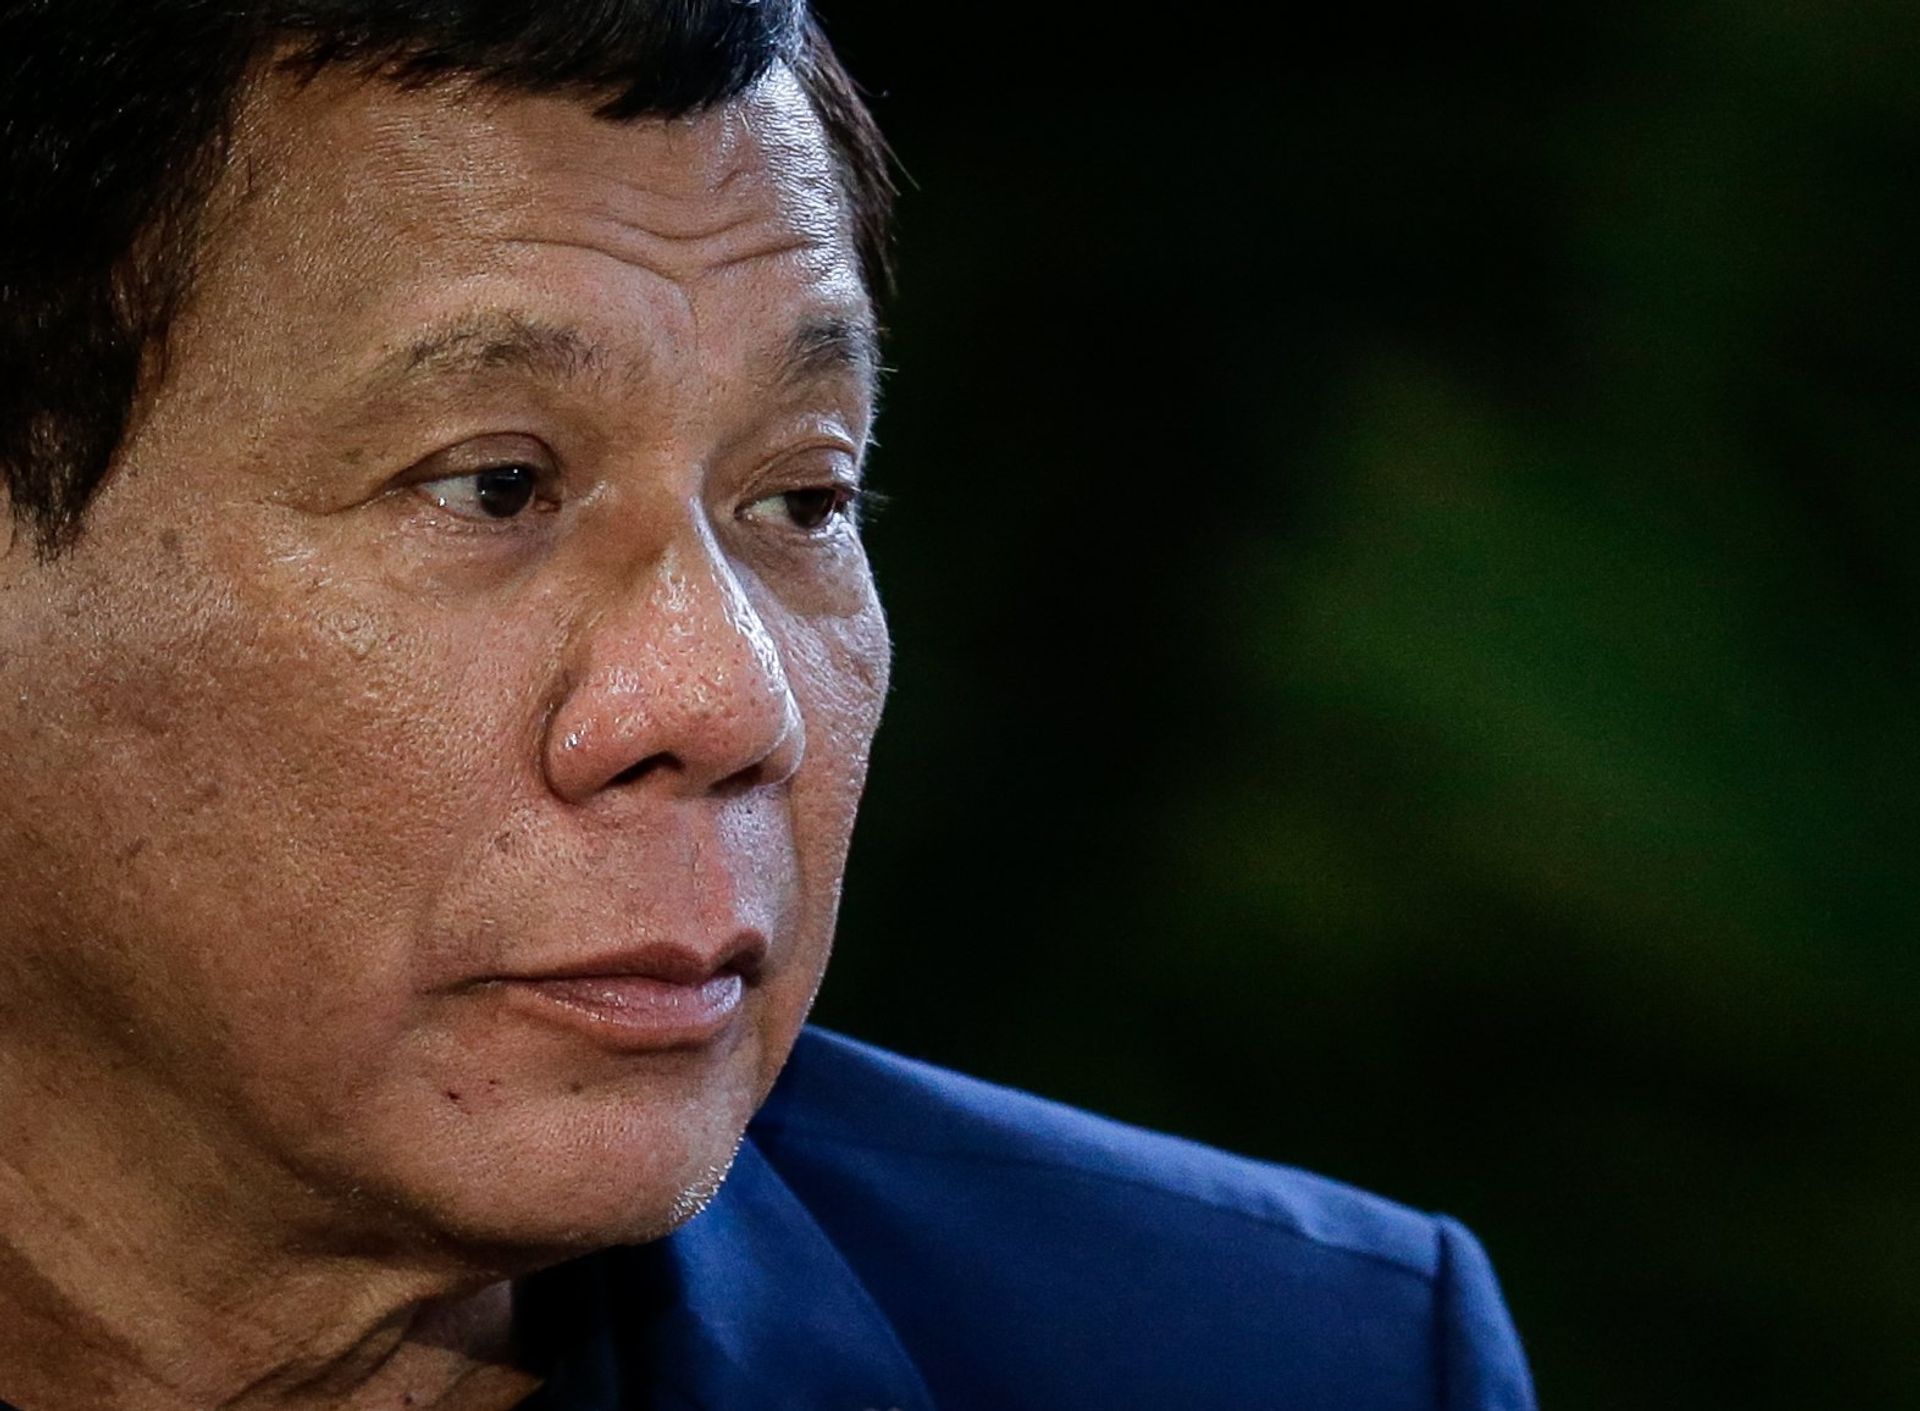 Filipijnse president grapt dat soldaten drie vrouwen mogen verkrachten - Joop